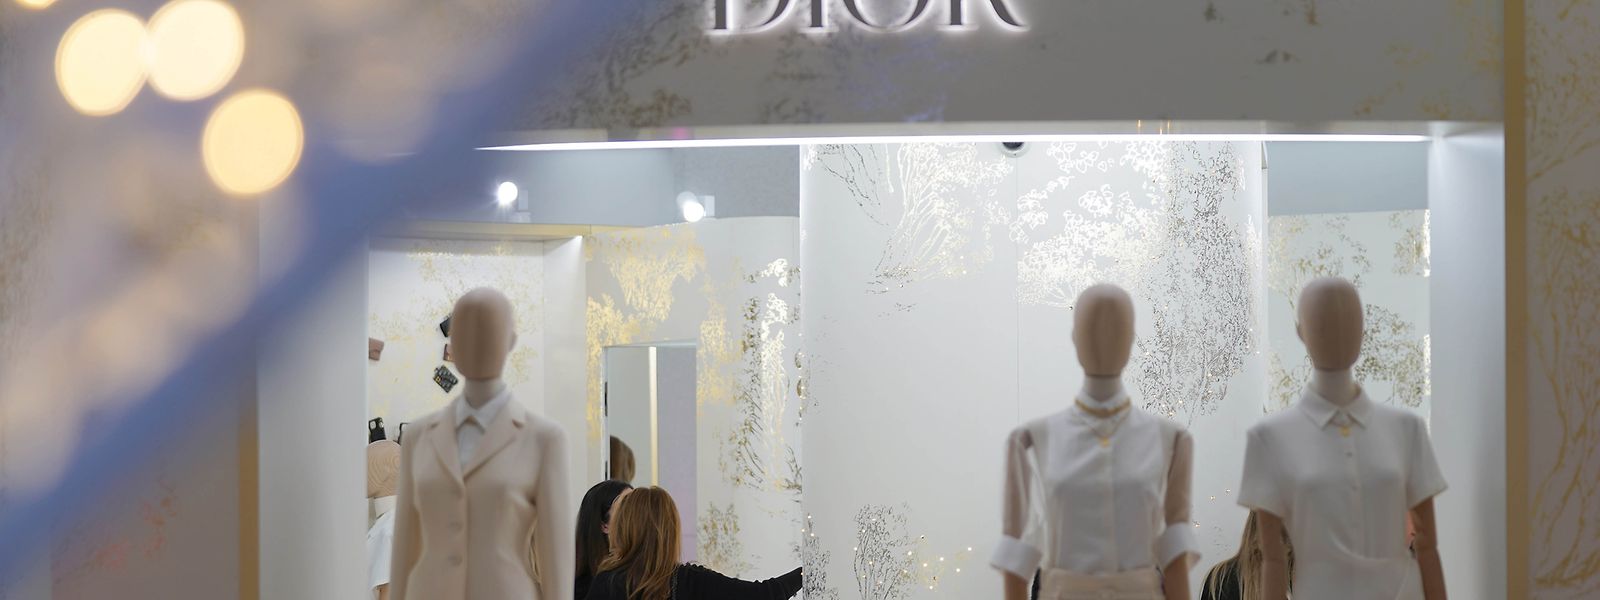 Die Dior-Abteilung im Luxuskaufhaus Alsterhaus in der Innenstadt. Die hohe Inflation macht es vielen Menschen schwer, ihren Lebensunterhalt zu bestreiten. Doch die Luxushersteller spüren bisher wenig von der Krise.